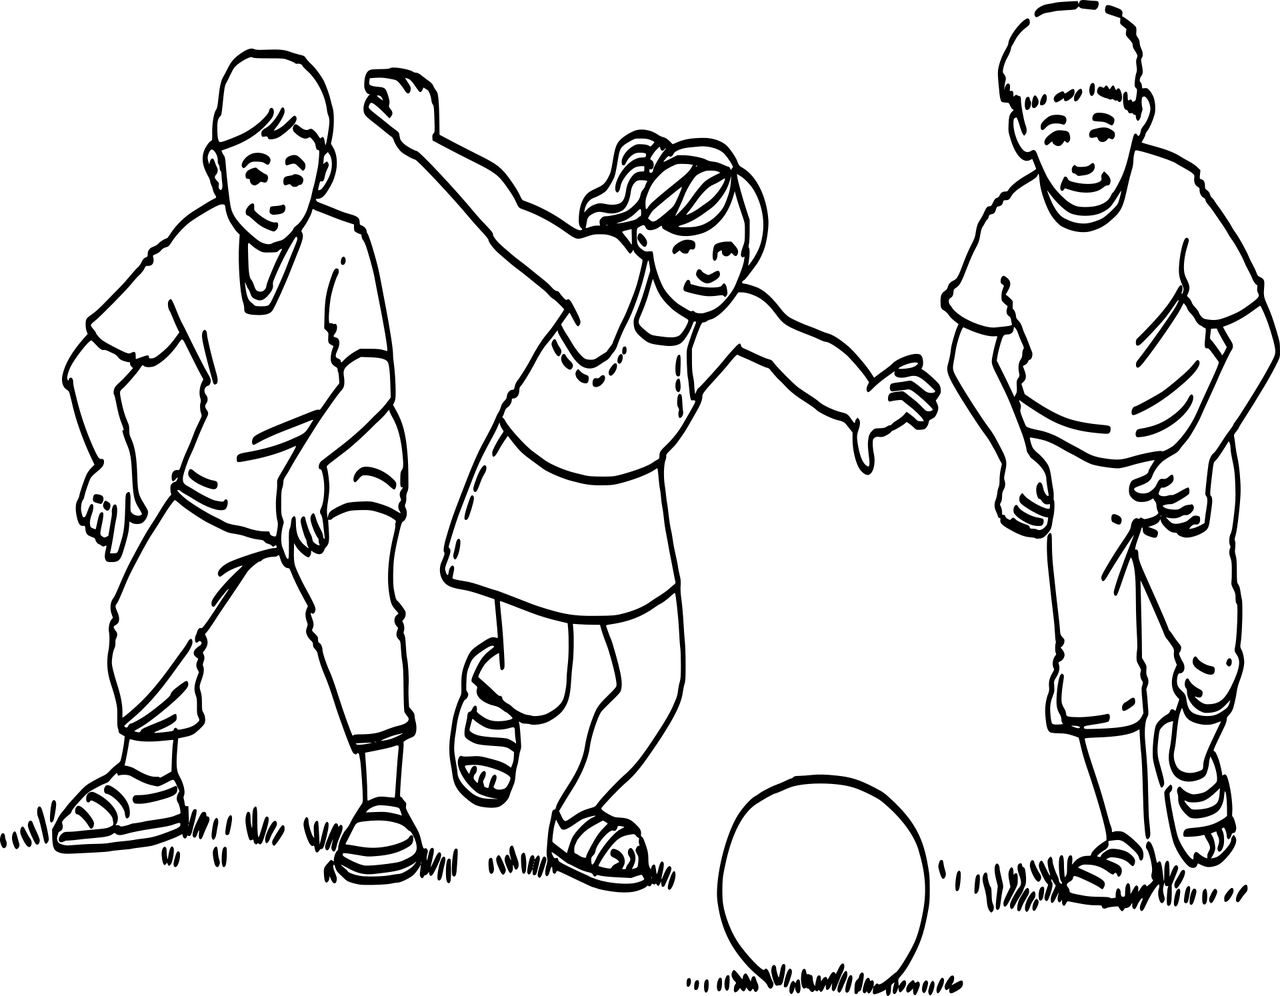 Illustratie (zwarte contouren tegen een witte achtergrond) van drie met een bal spelende kinderen